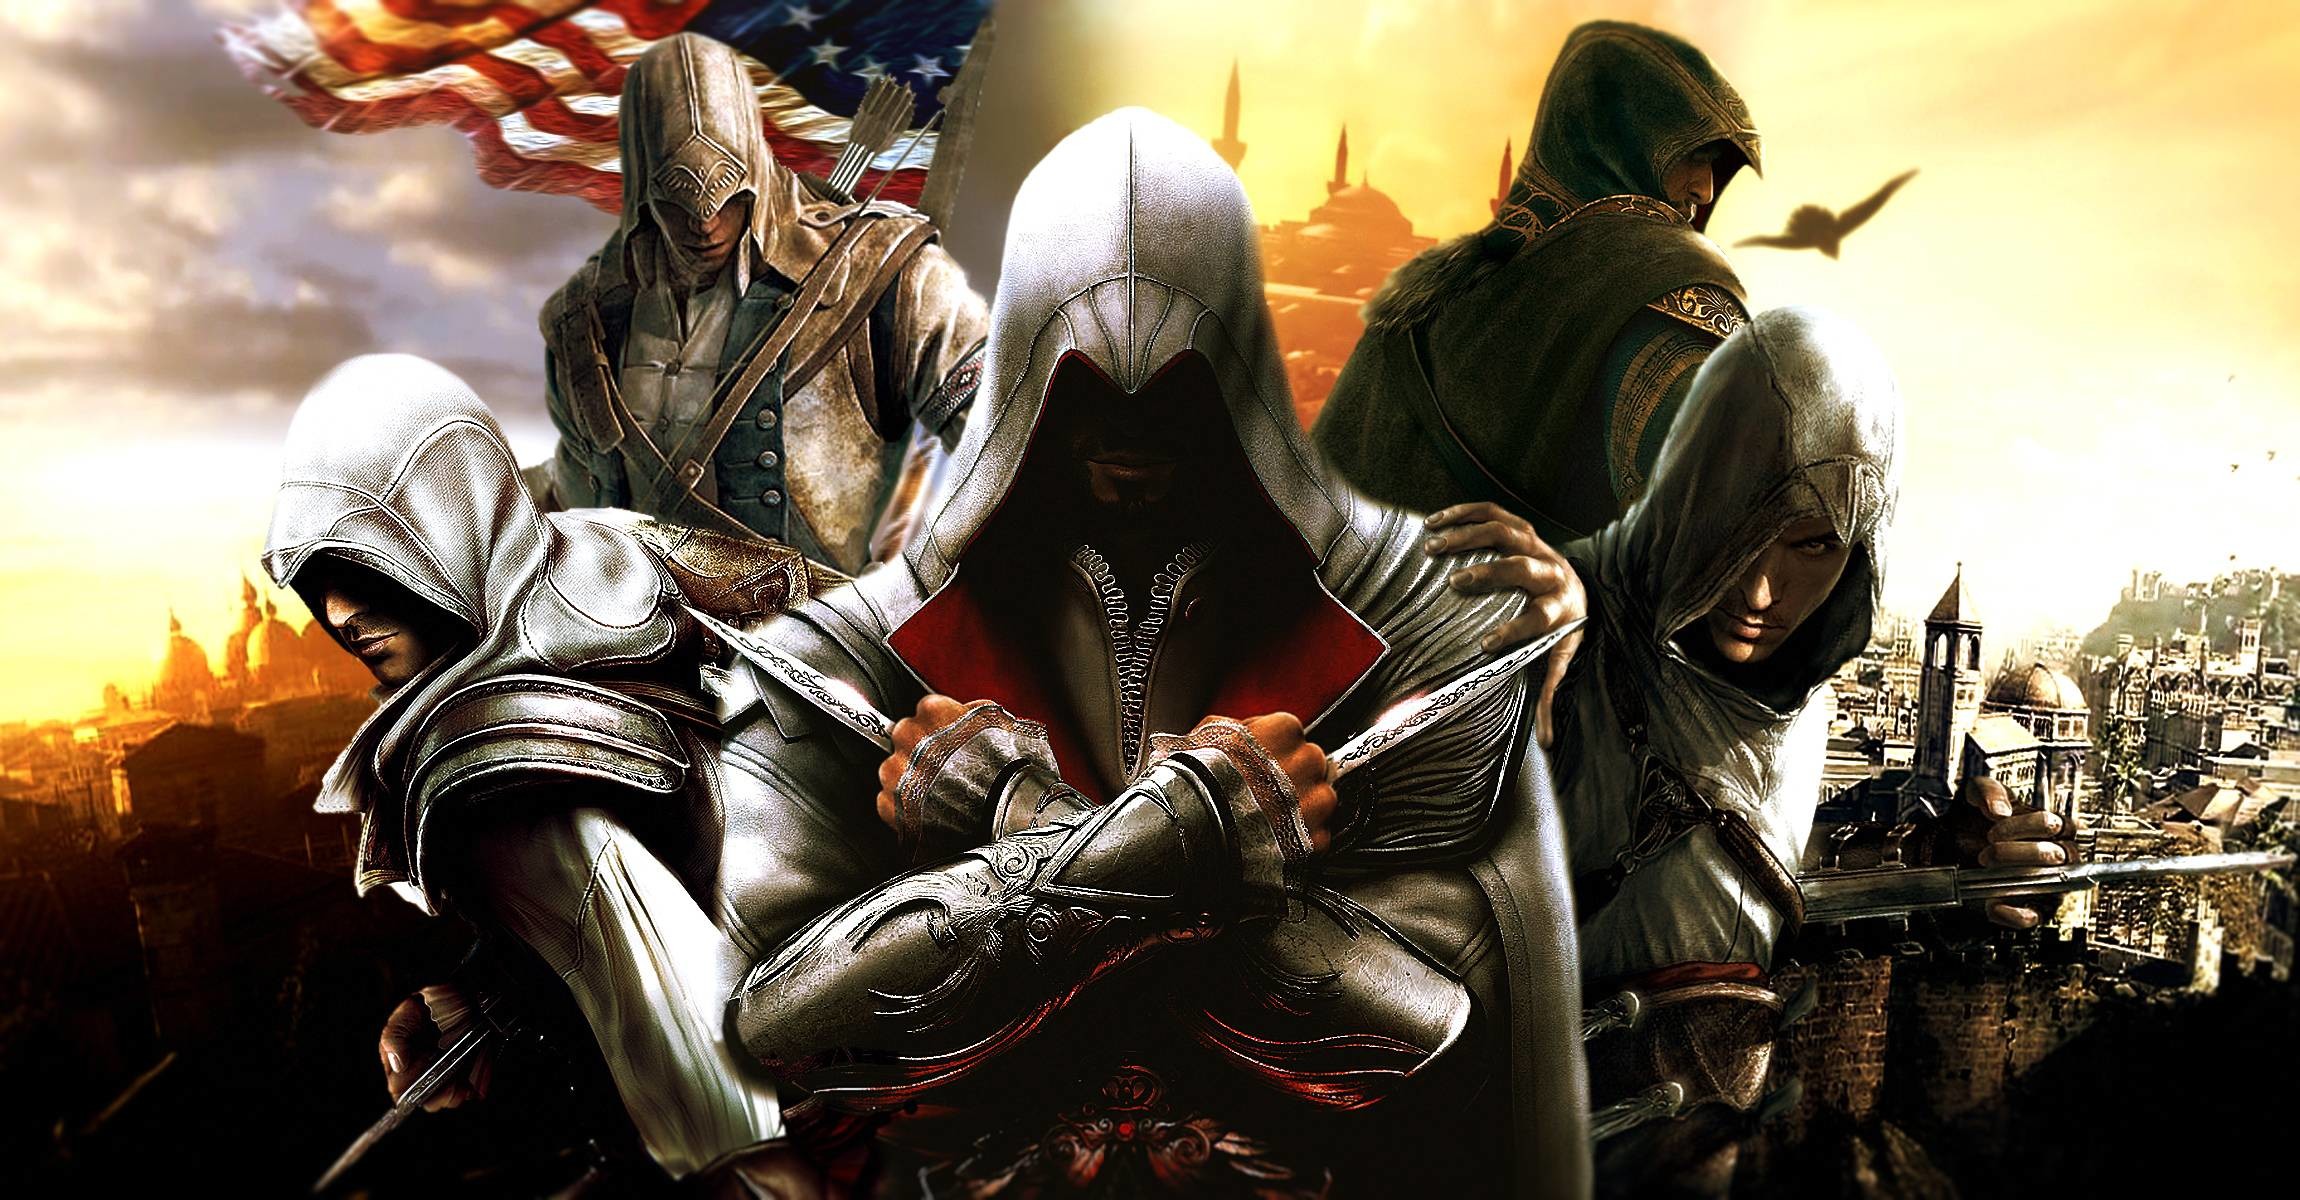 2300x1200 Assassins Creed mix Computer Wallpapers, Desktop Backgrounds .